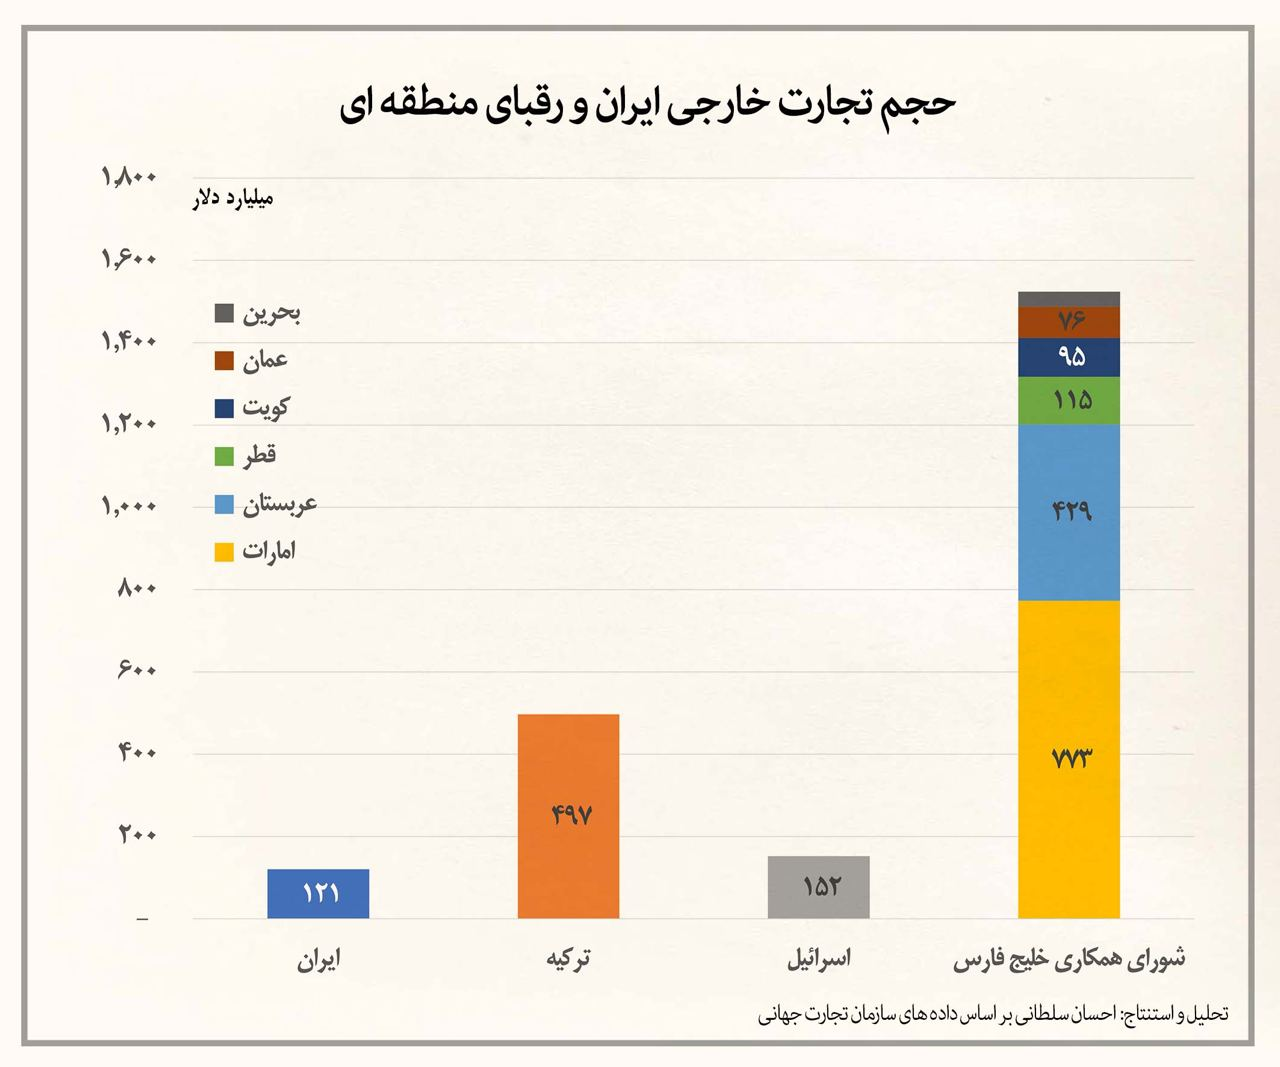 وزن کم ایران در تجارت جهانی